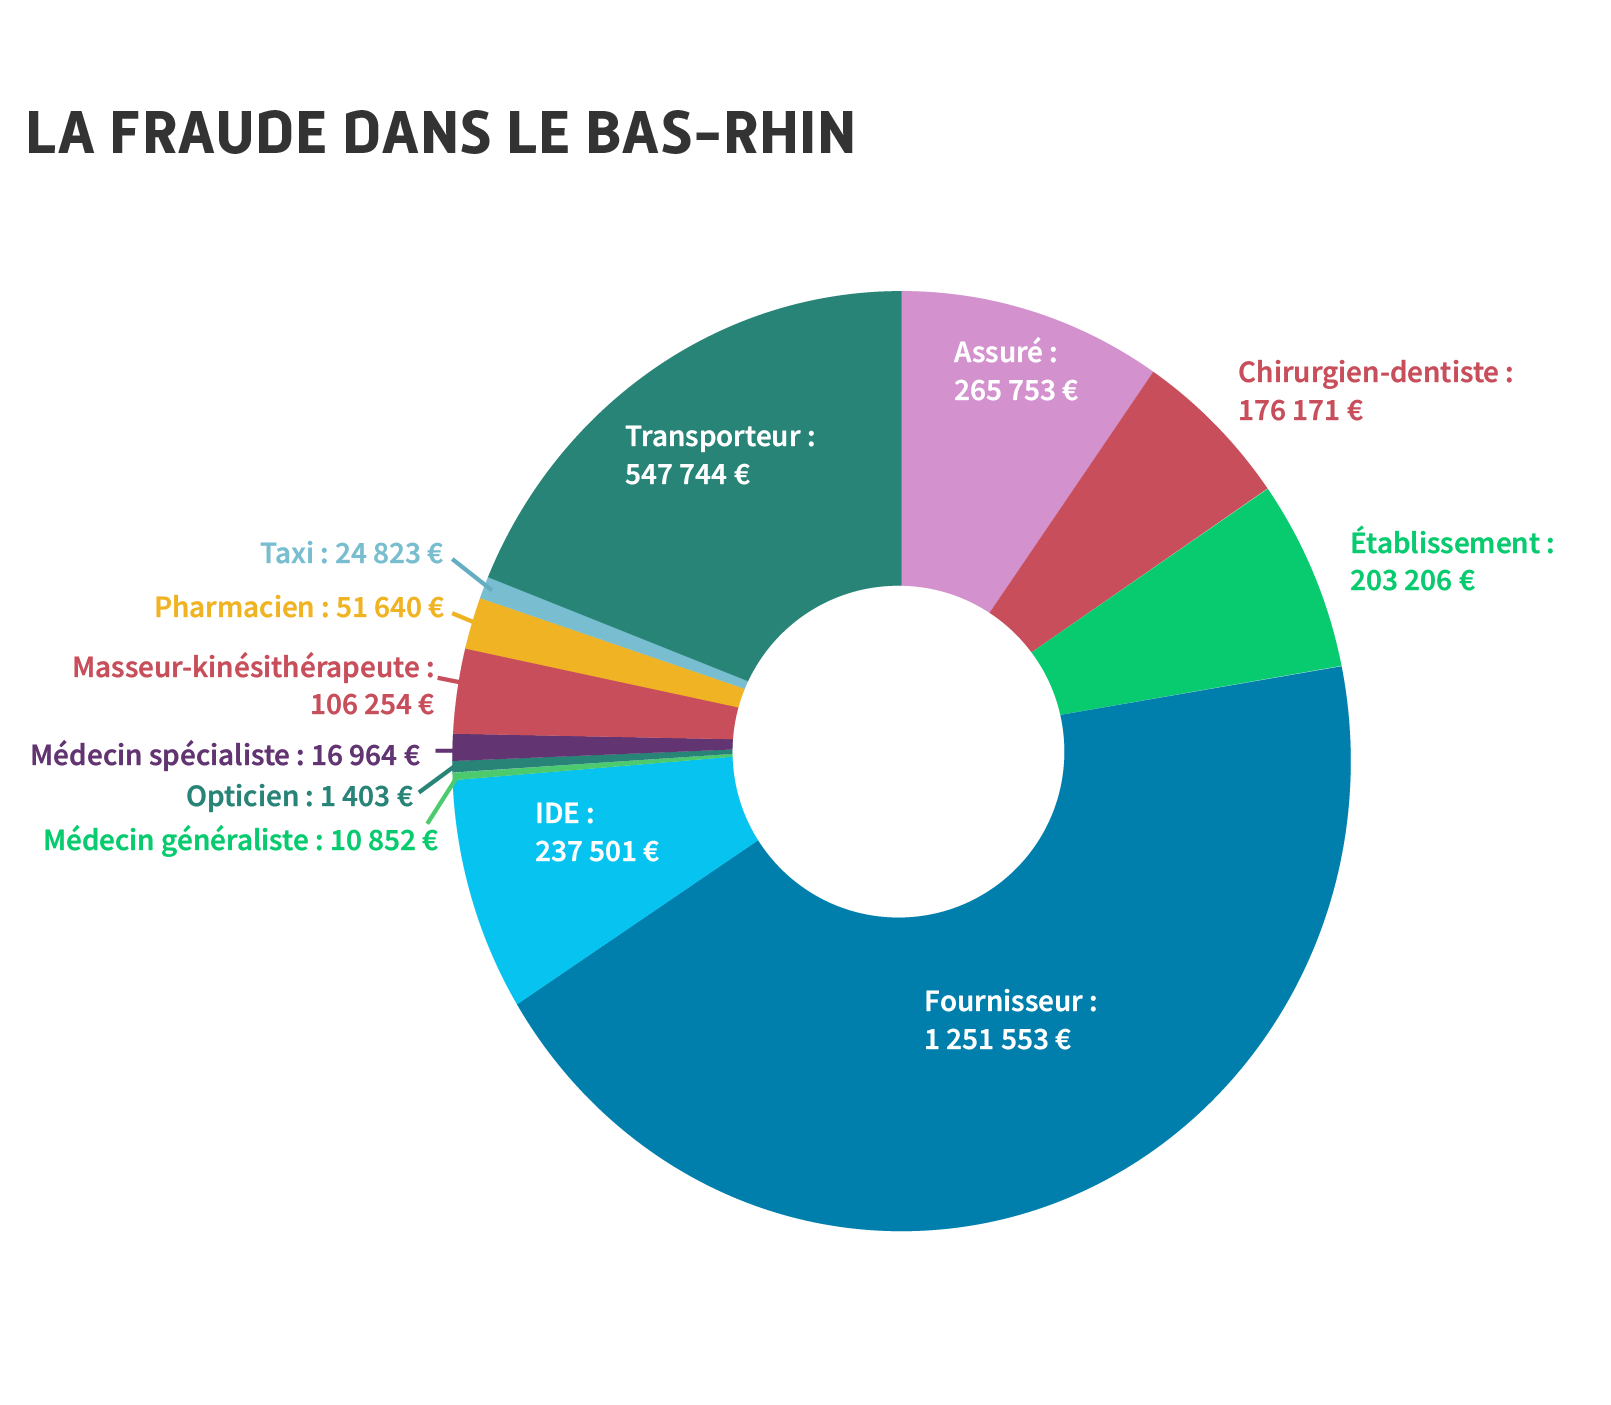 Les responsables de la fraude dans le Bas-Rhin